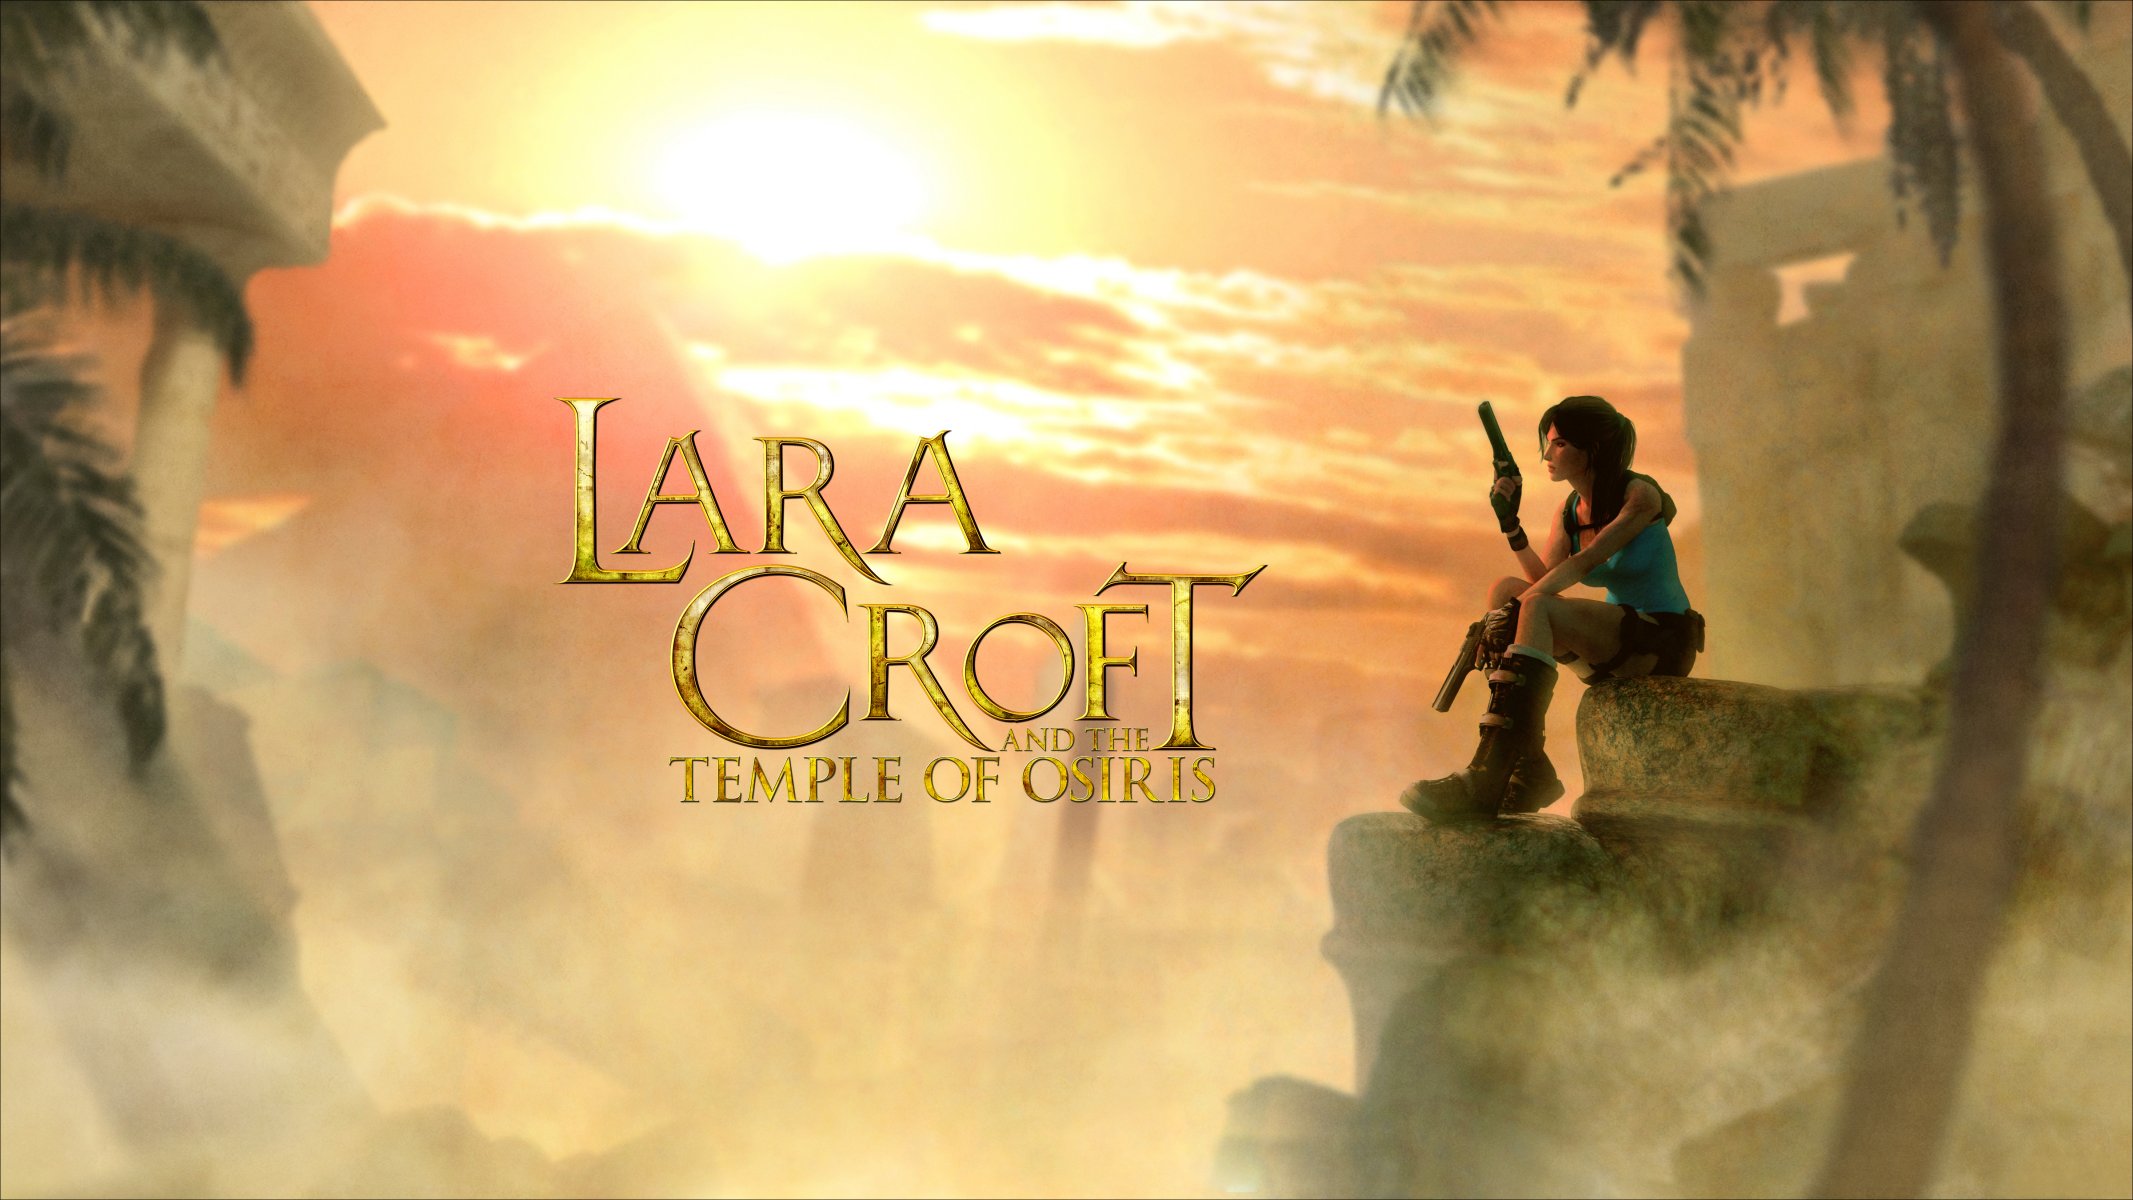 Lara croft and the temple of osiris в стиме фото 99